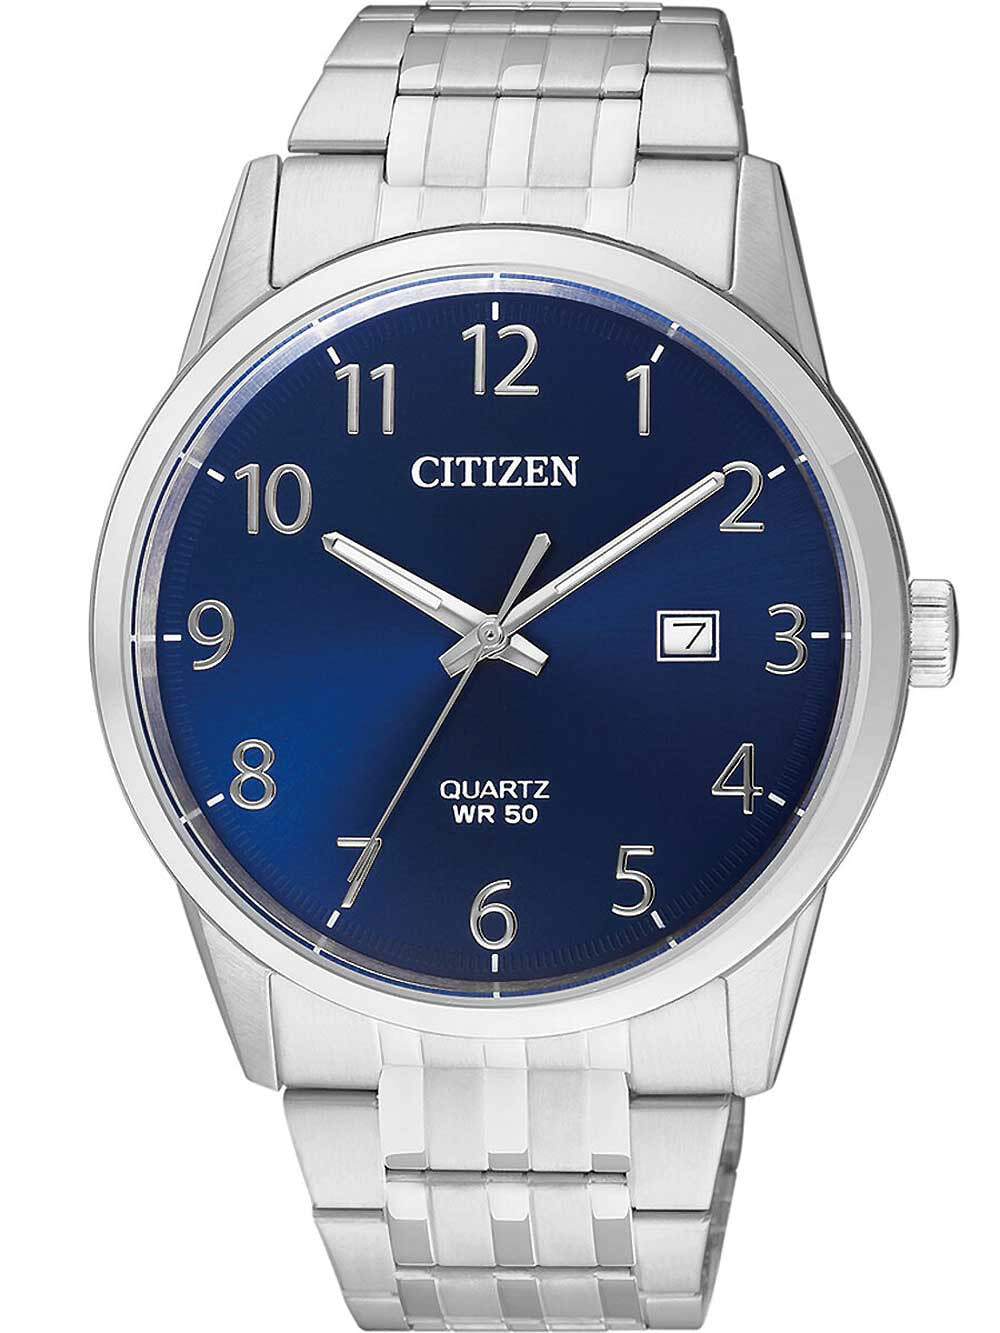 Мужские наручные часы с серебряным браслетом Citizen BI5000-52L quartz mens watch 39mm 5ATM